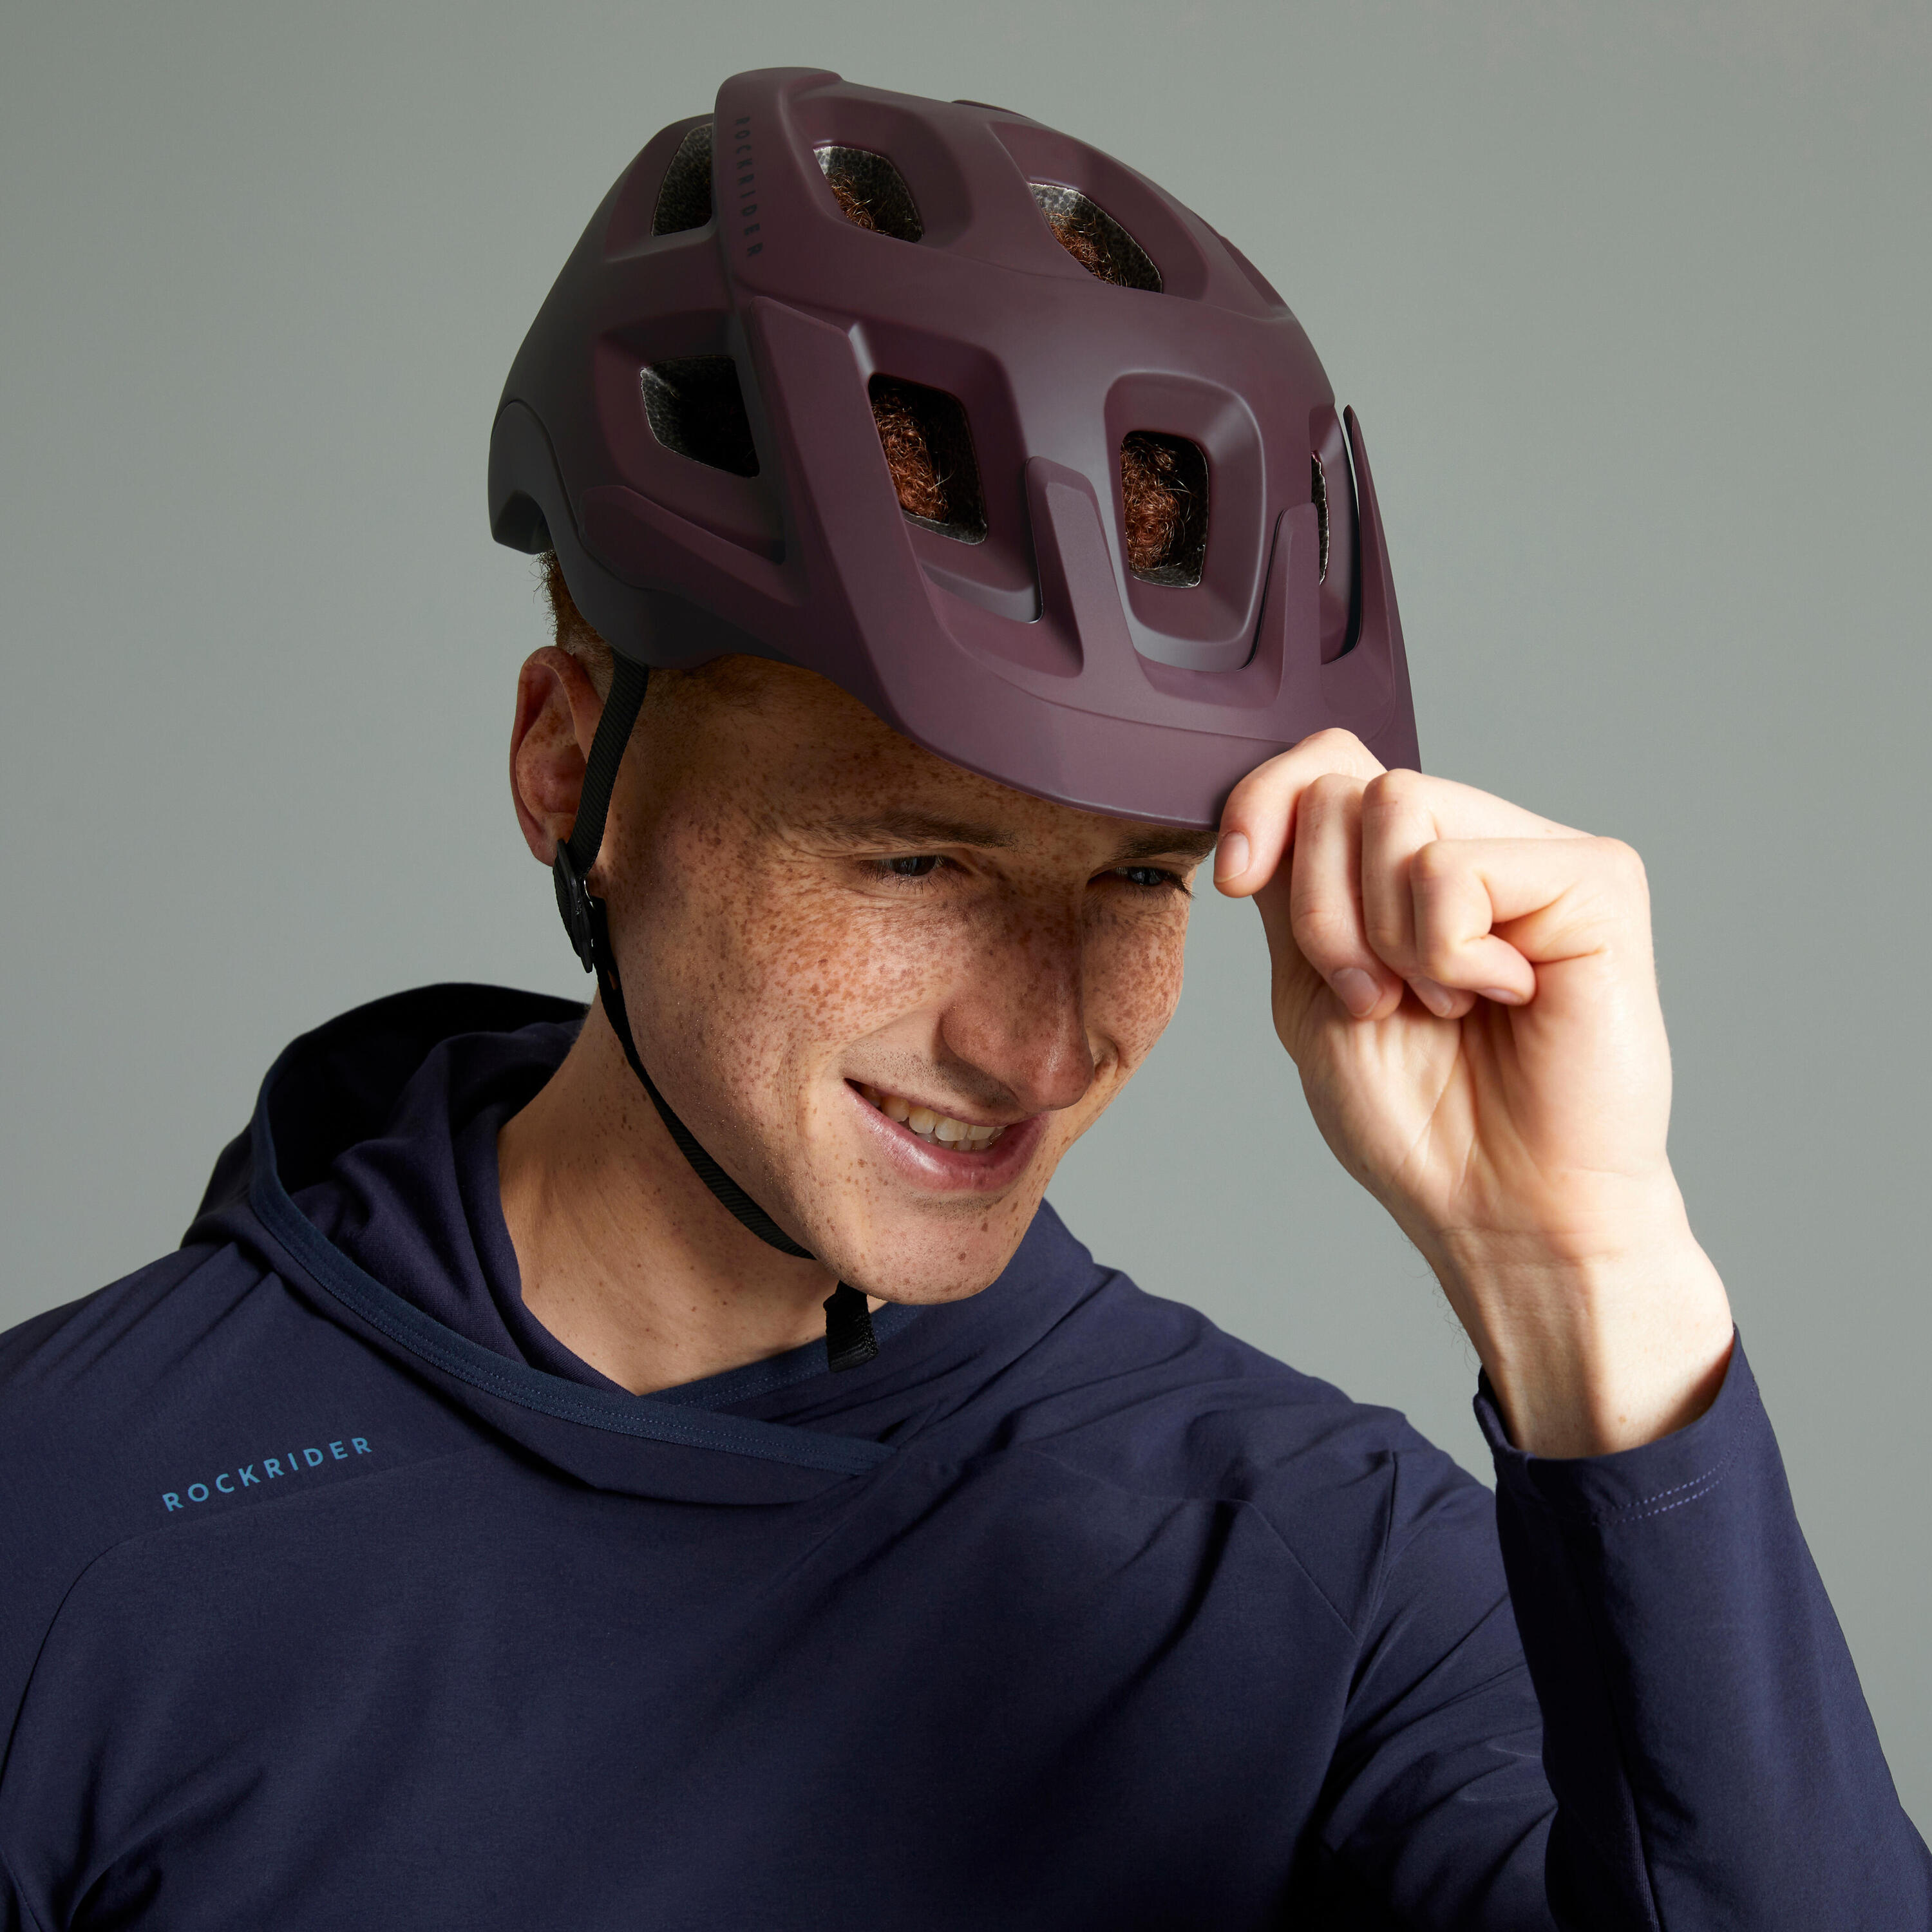 Mountain Bike Helmet EXPL 500 - Burgundy 2/18